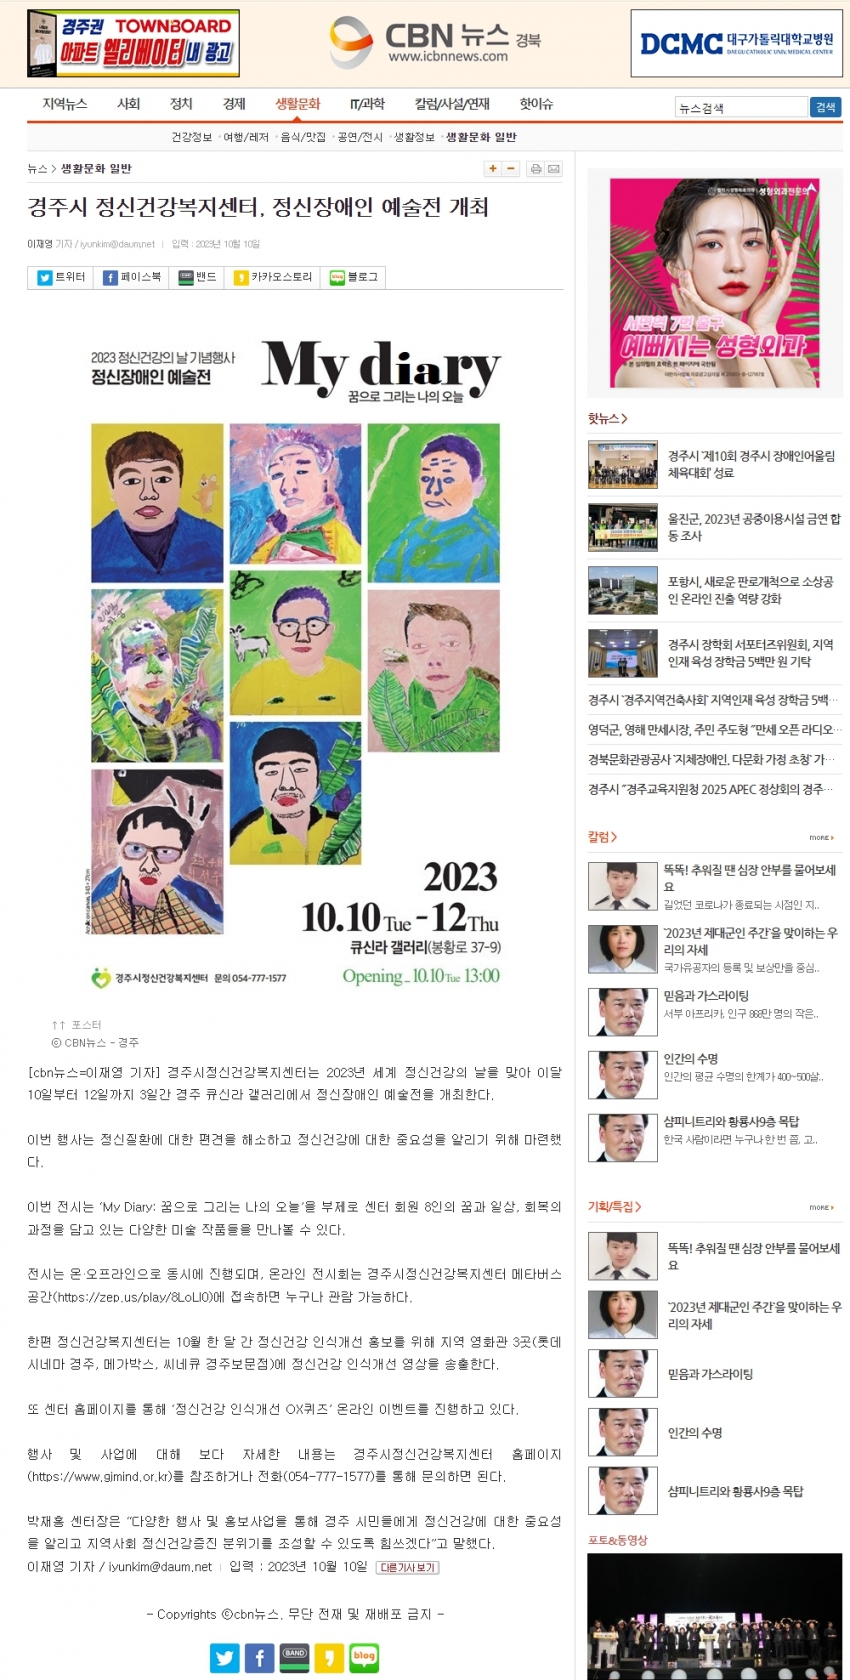 경주시정신건강복지센터, 정신장애인 예술전 개최_cbn뉴스.jpg